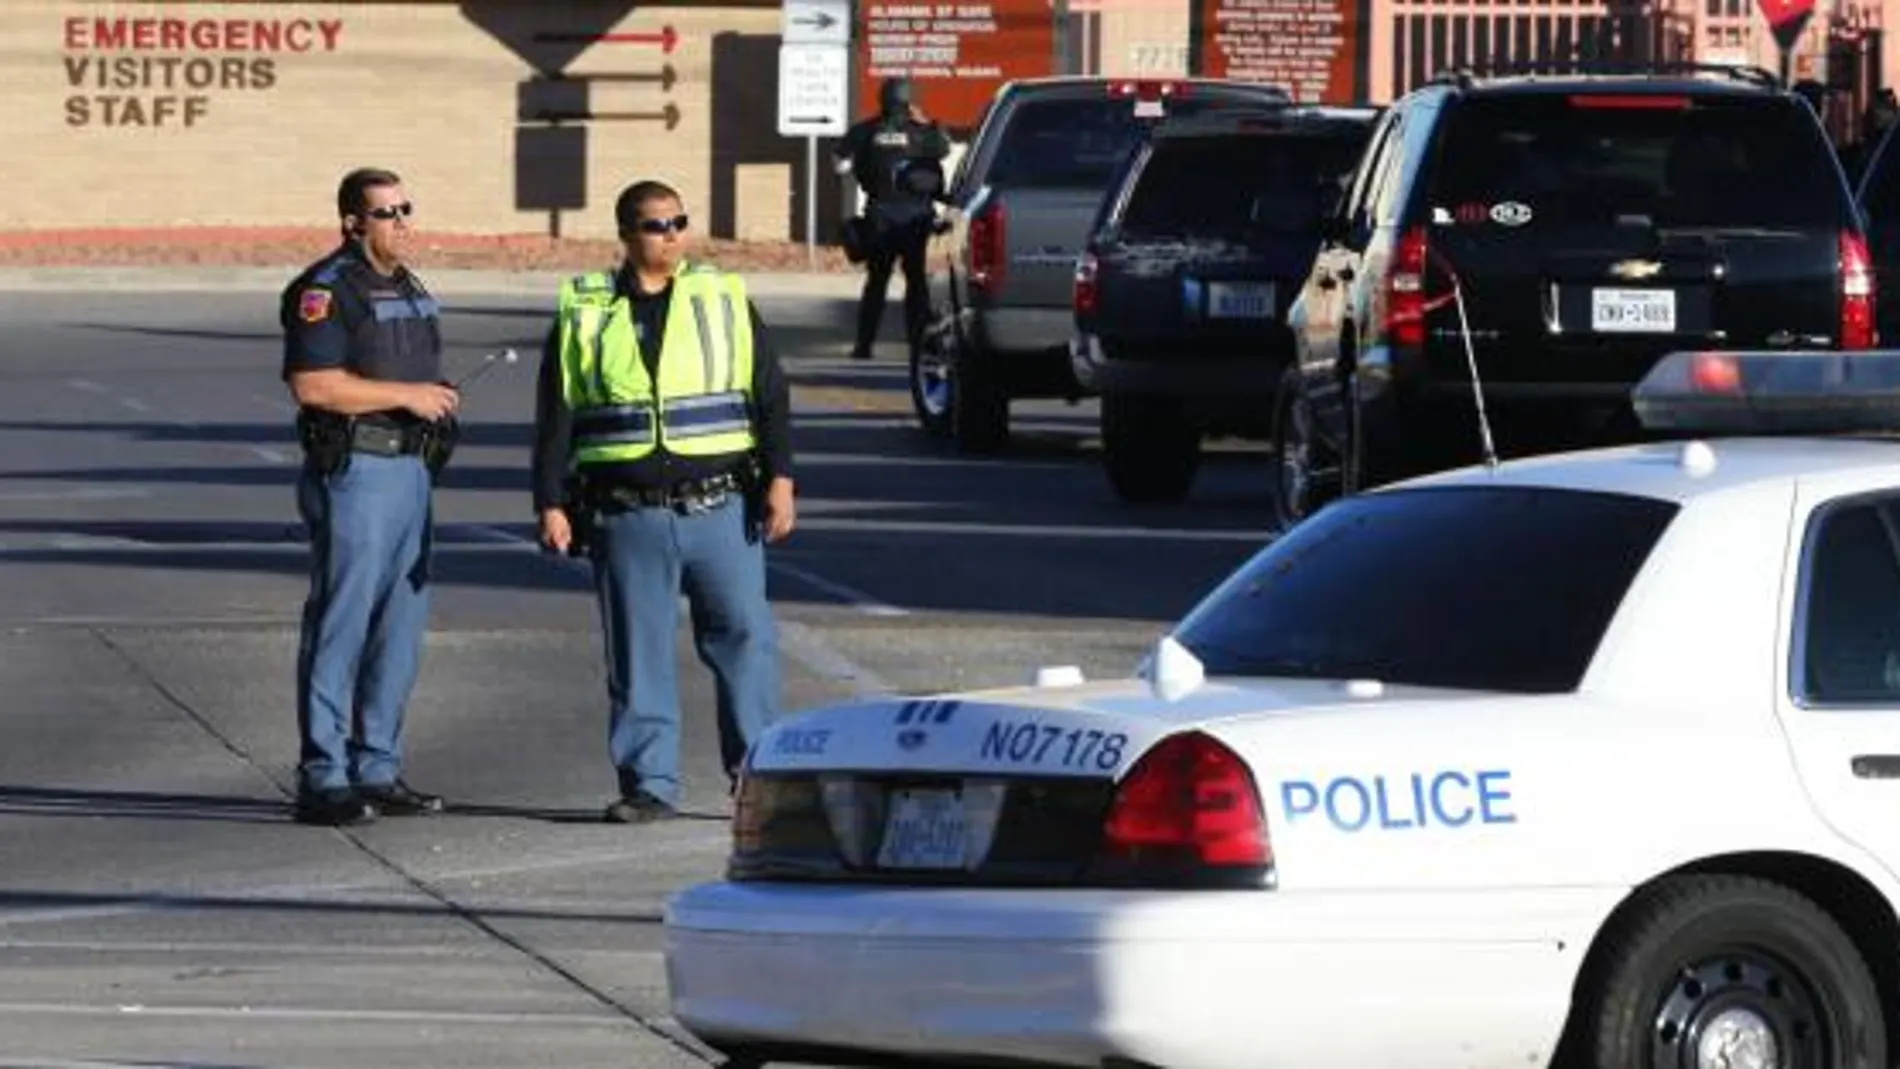 El incidente tuvo lugar en el hospital del Sistema de Atención Sanitaria de los veteranos del Ejército estadounidense de la ciudad tejana de El Paso